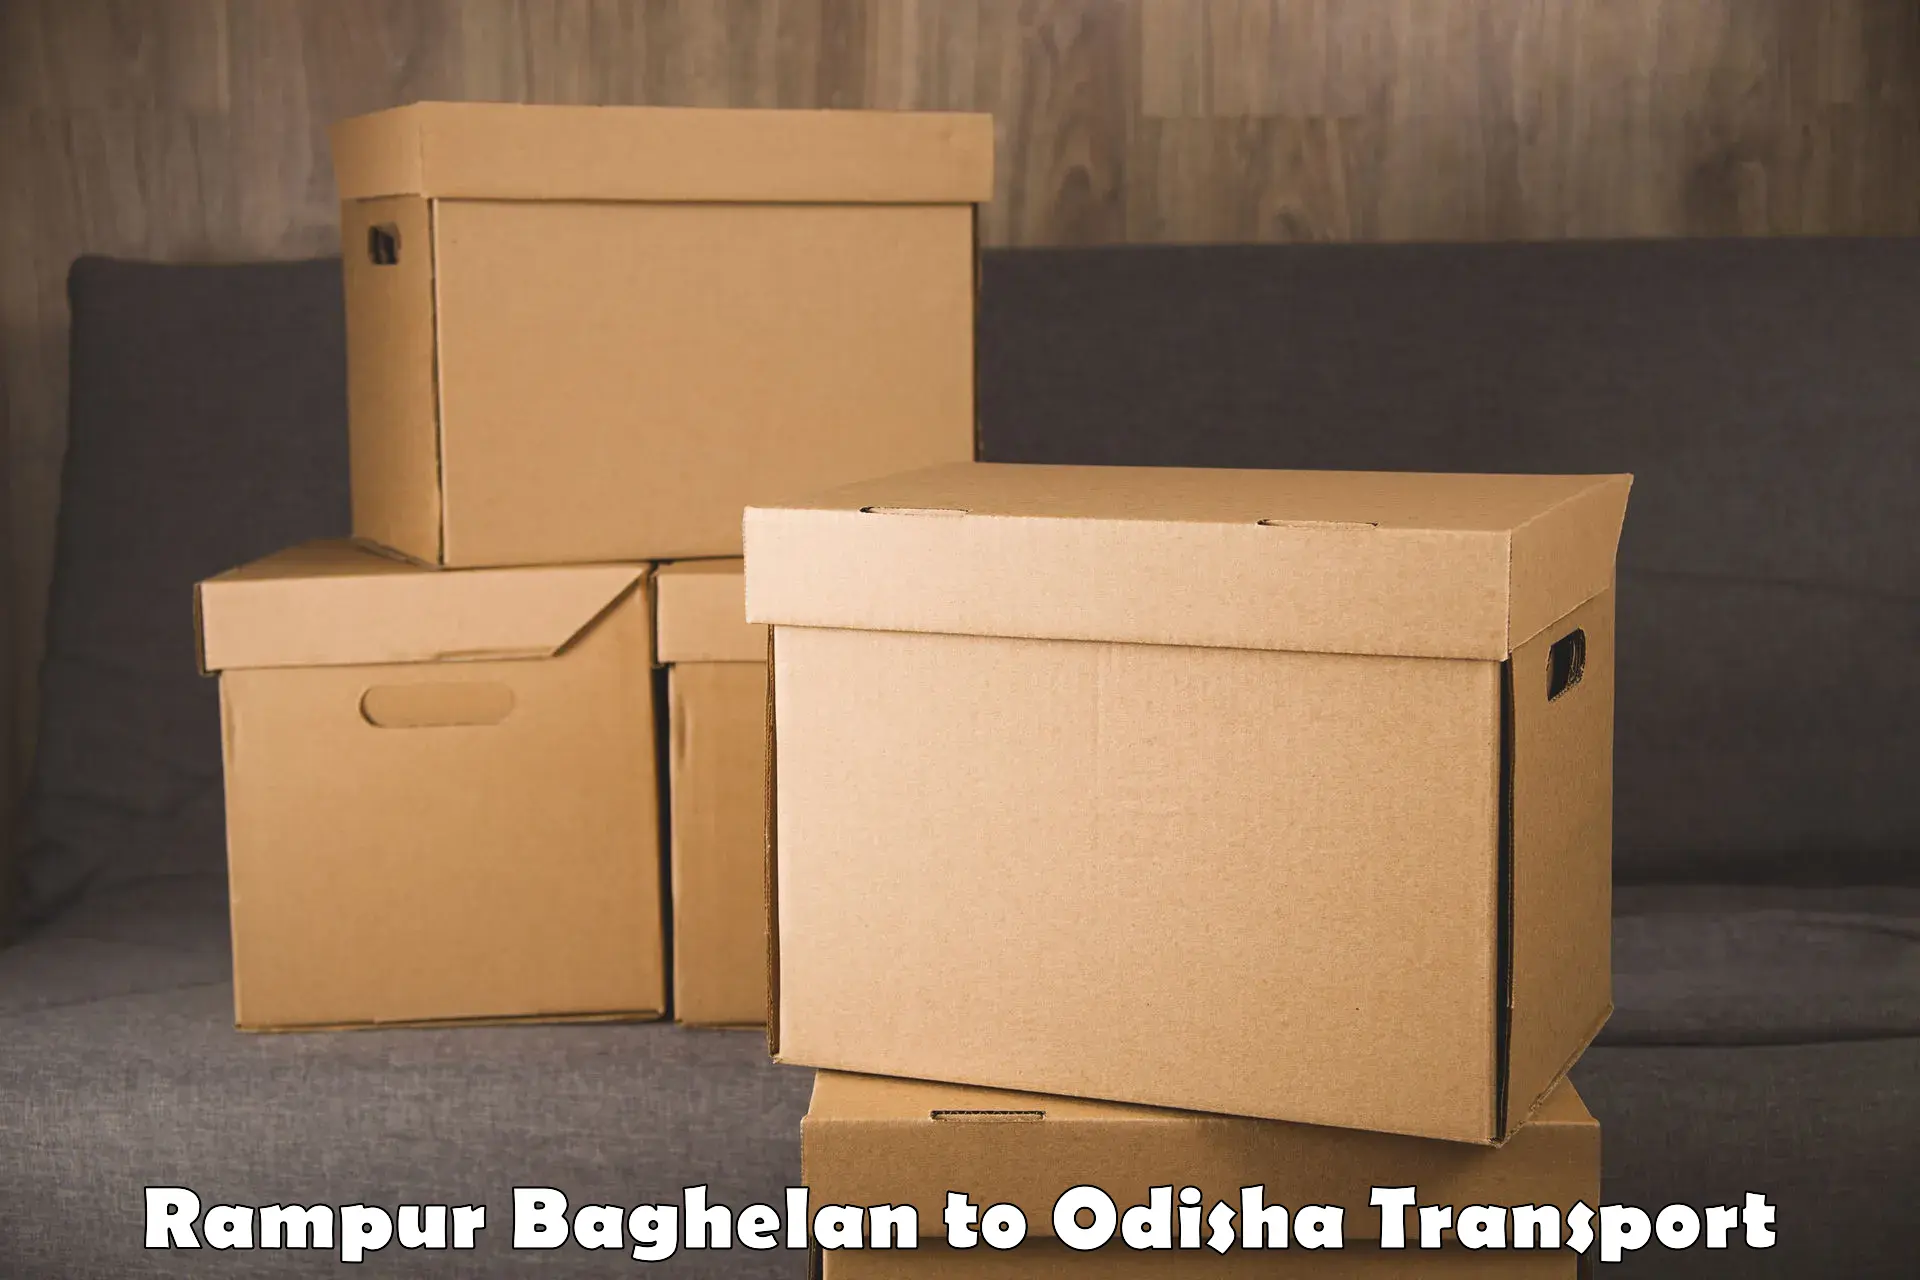 International cargo transportation services Rampur Baghelan to Paralakhemundi